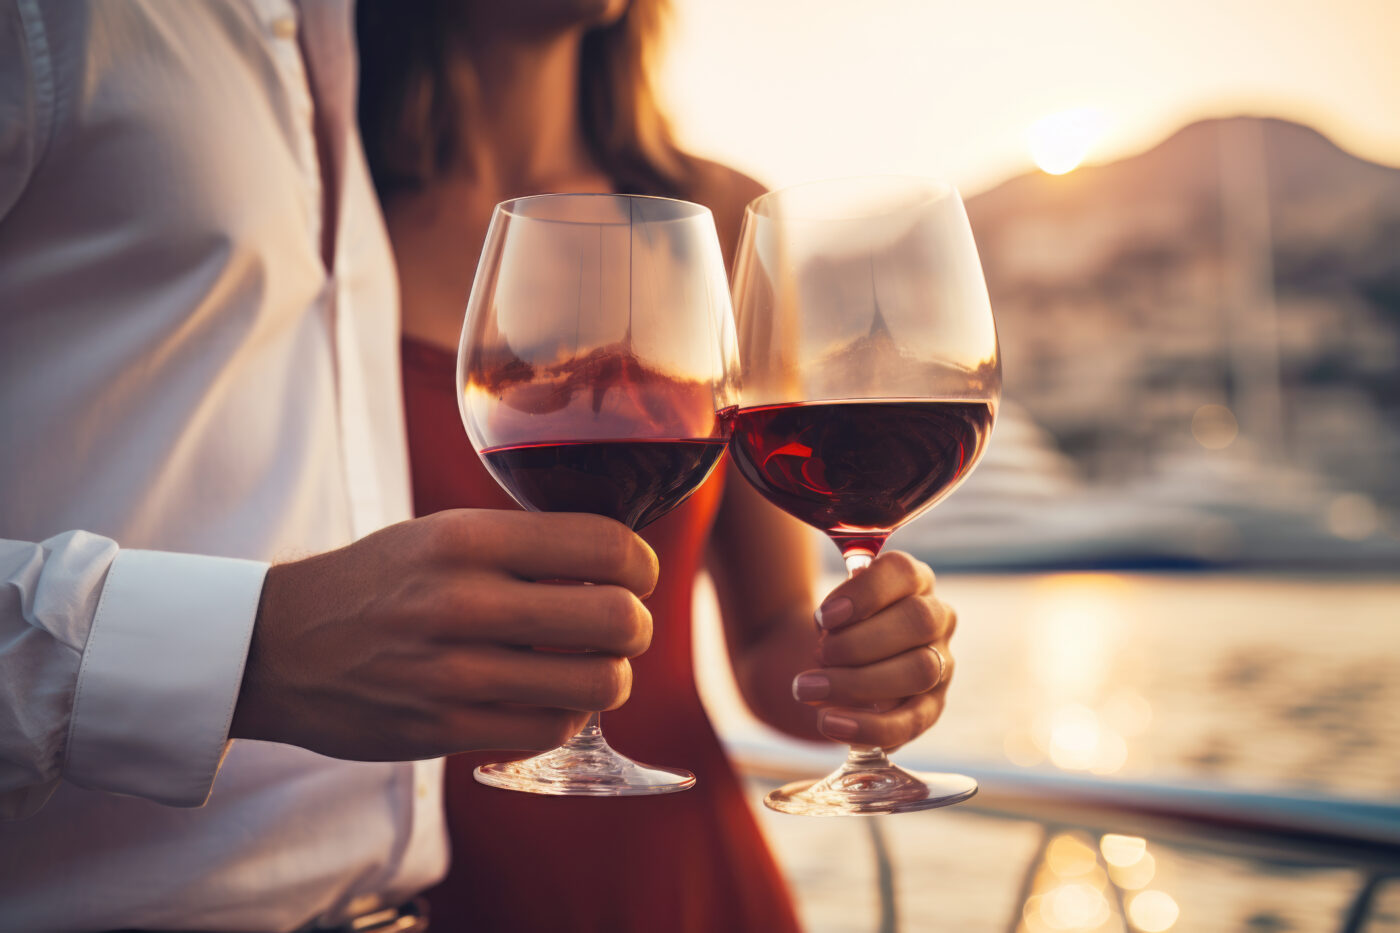 Una serata romantica e un buon bicchiere di vino rosso Ruhanero ❤️🍷